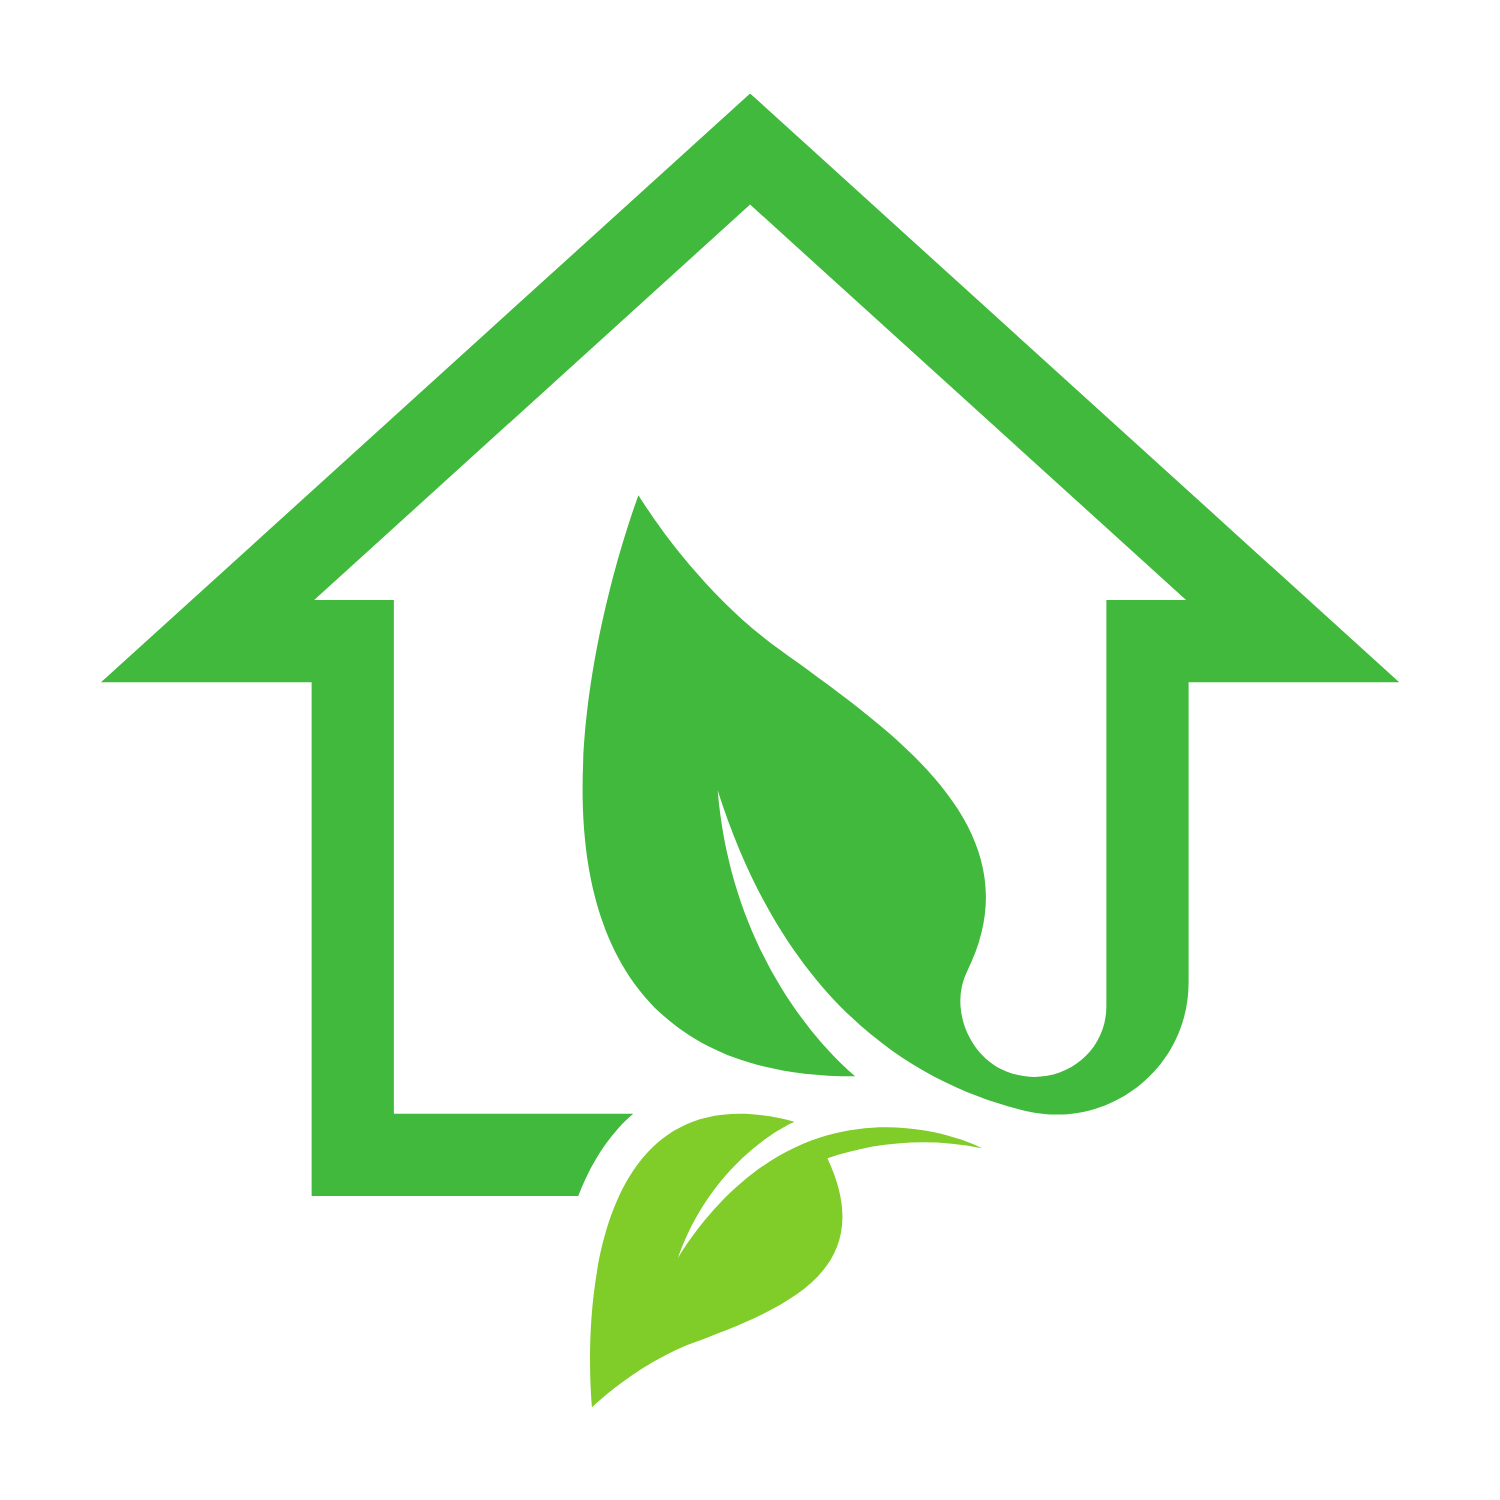 plantifyhome logo